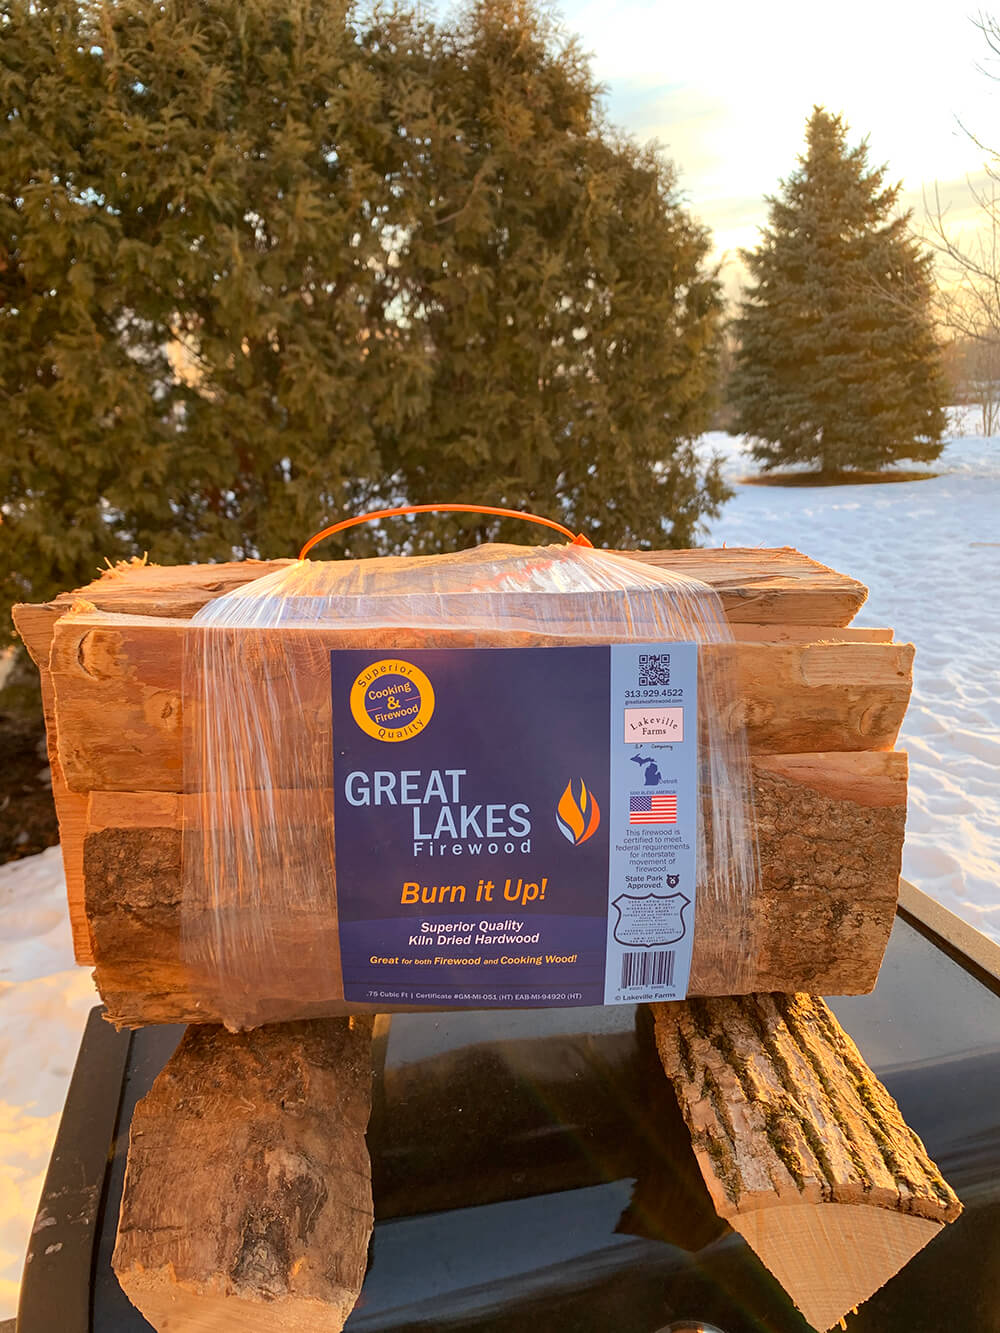 Great Lakes Firewood & Cooking Wood Bundle Packaging